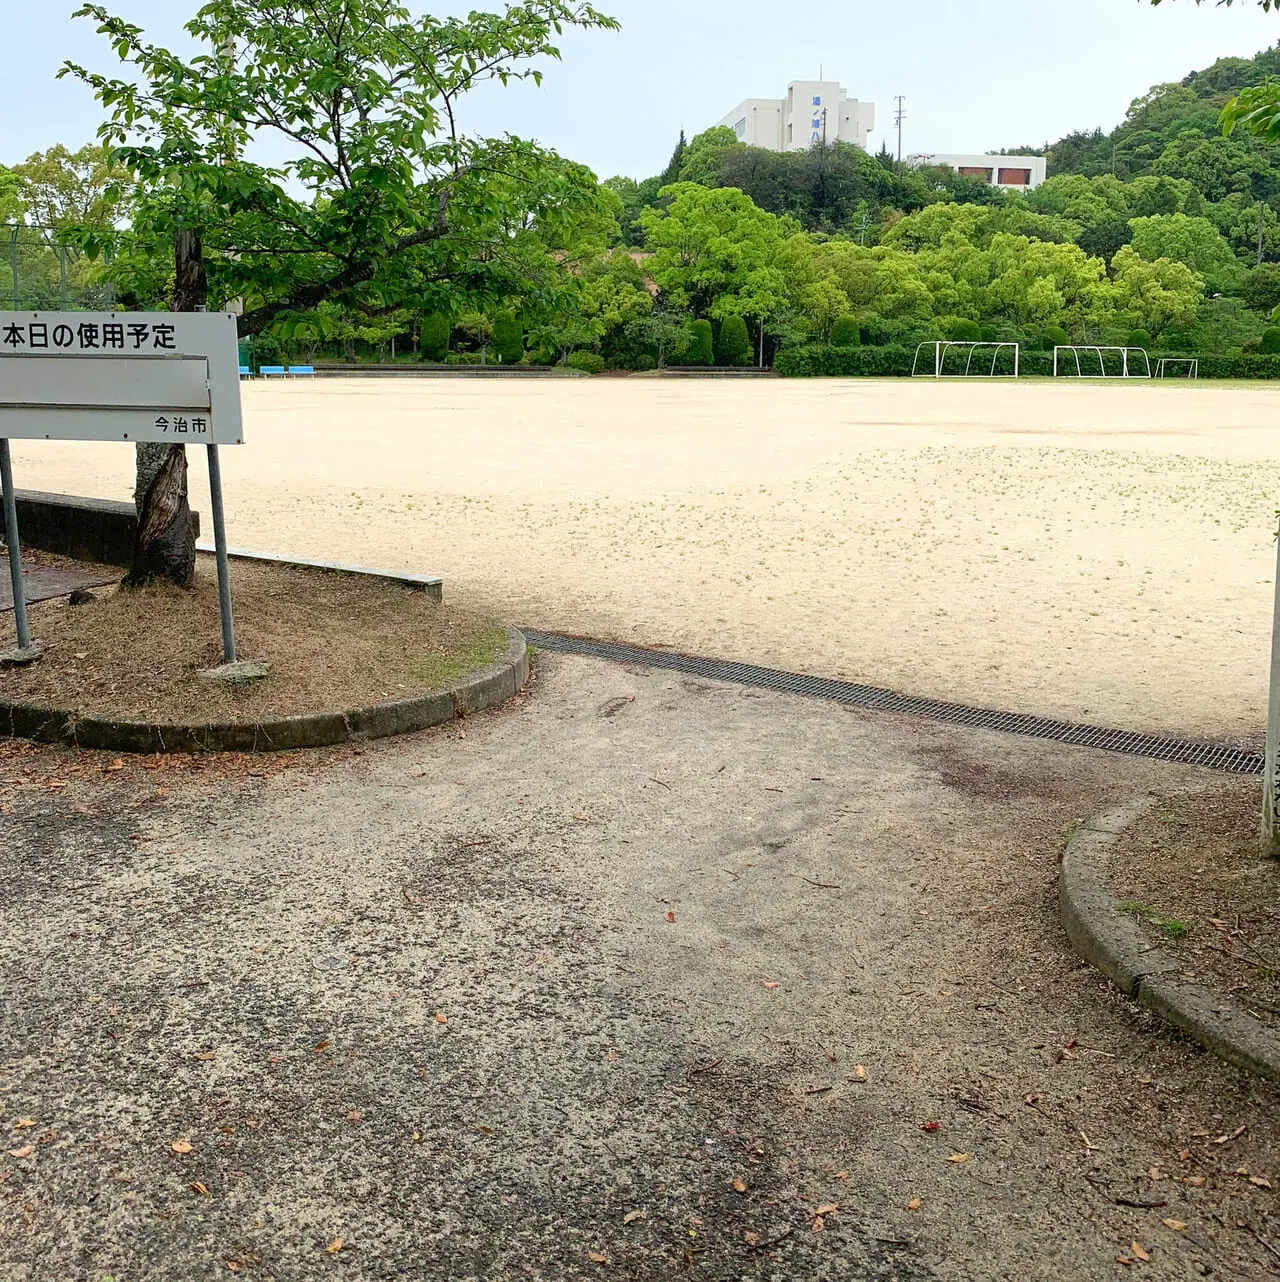 「桜井総合公園」にドッグランが導入されました!!